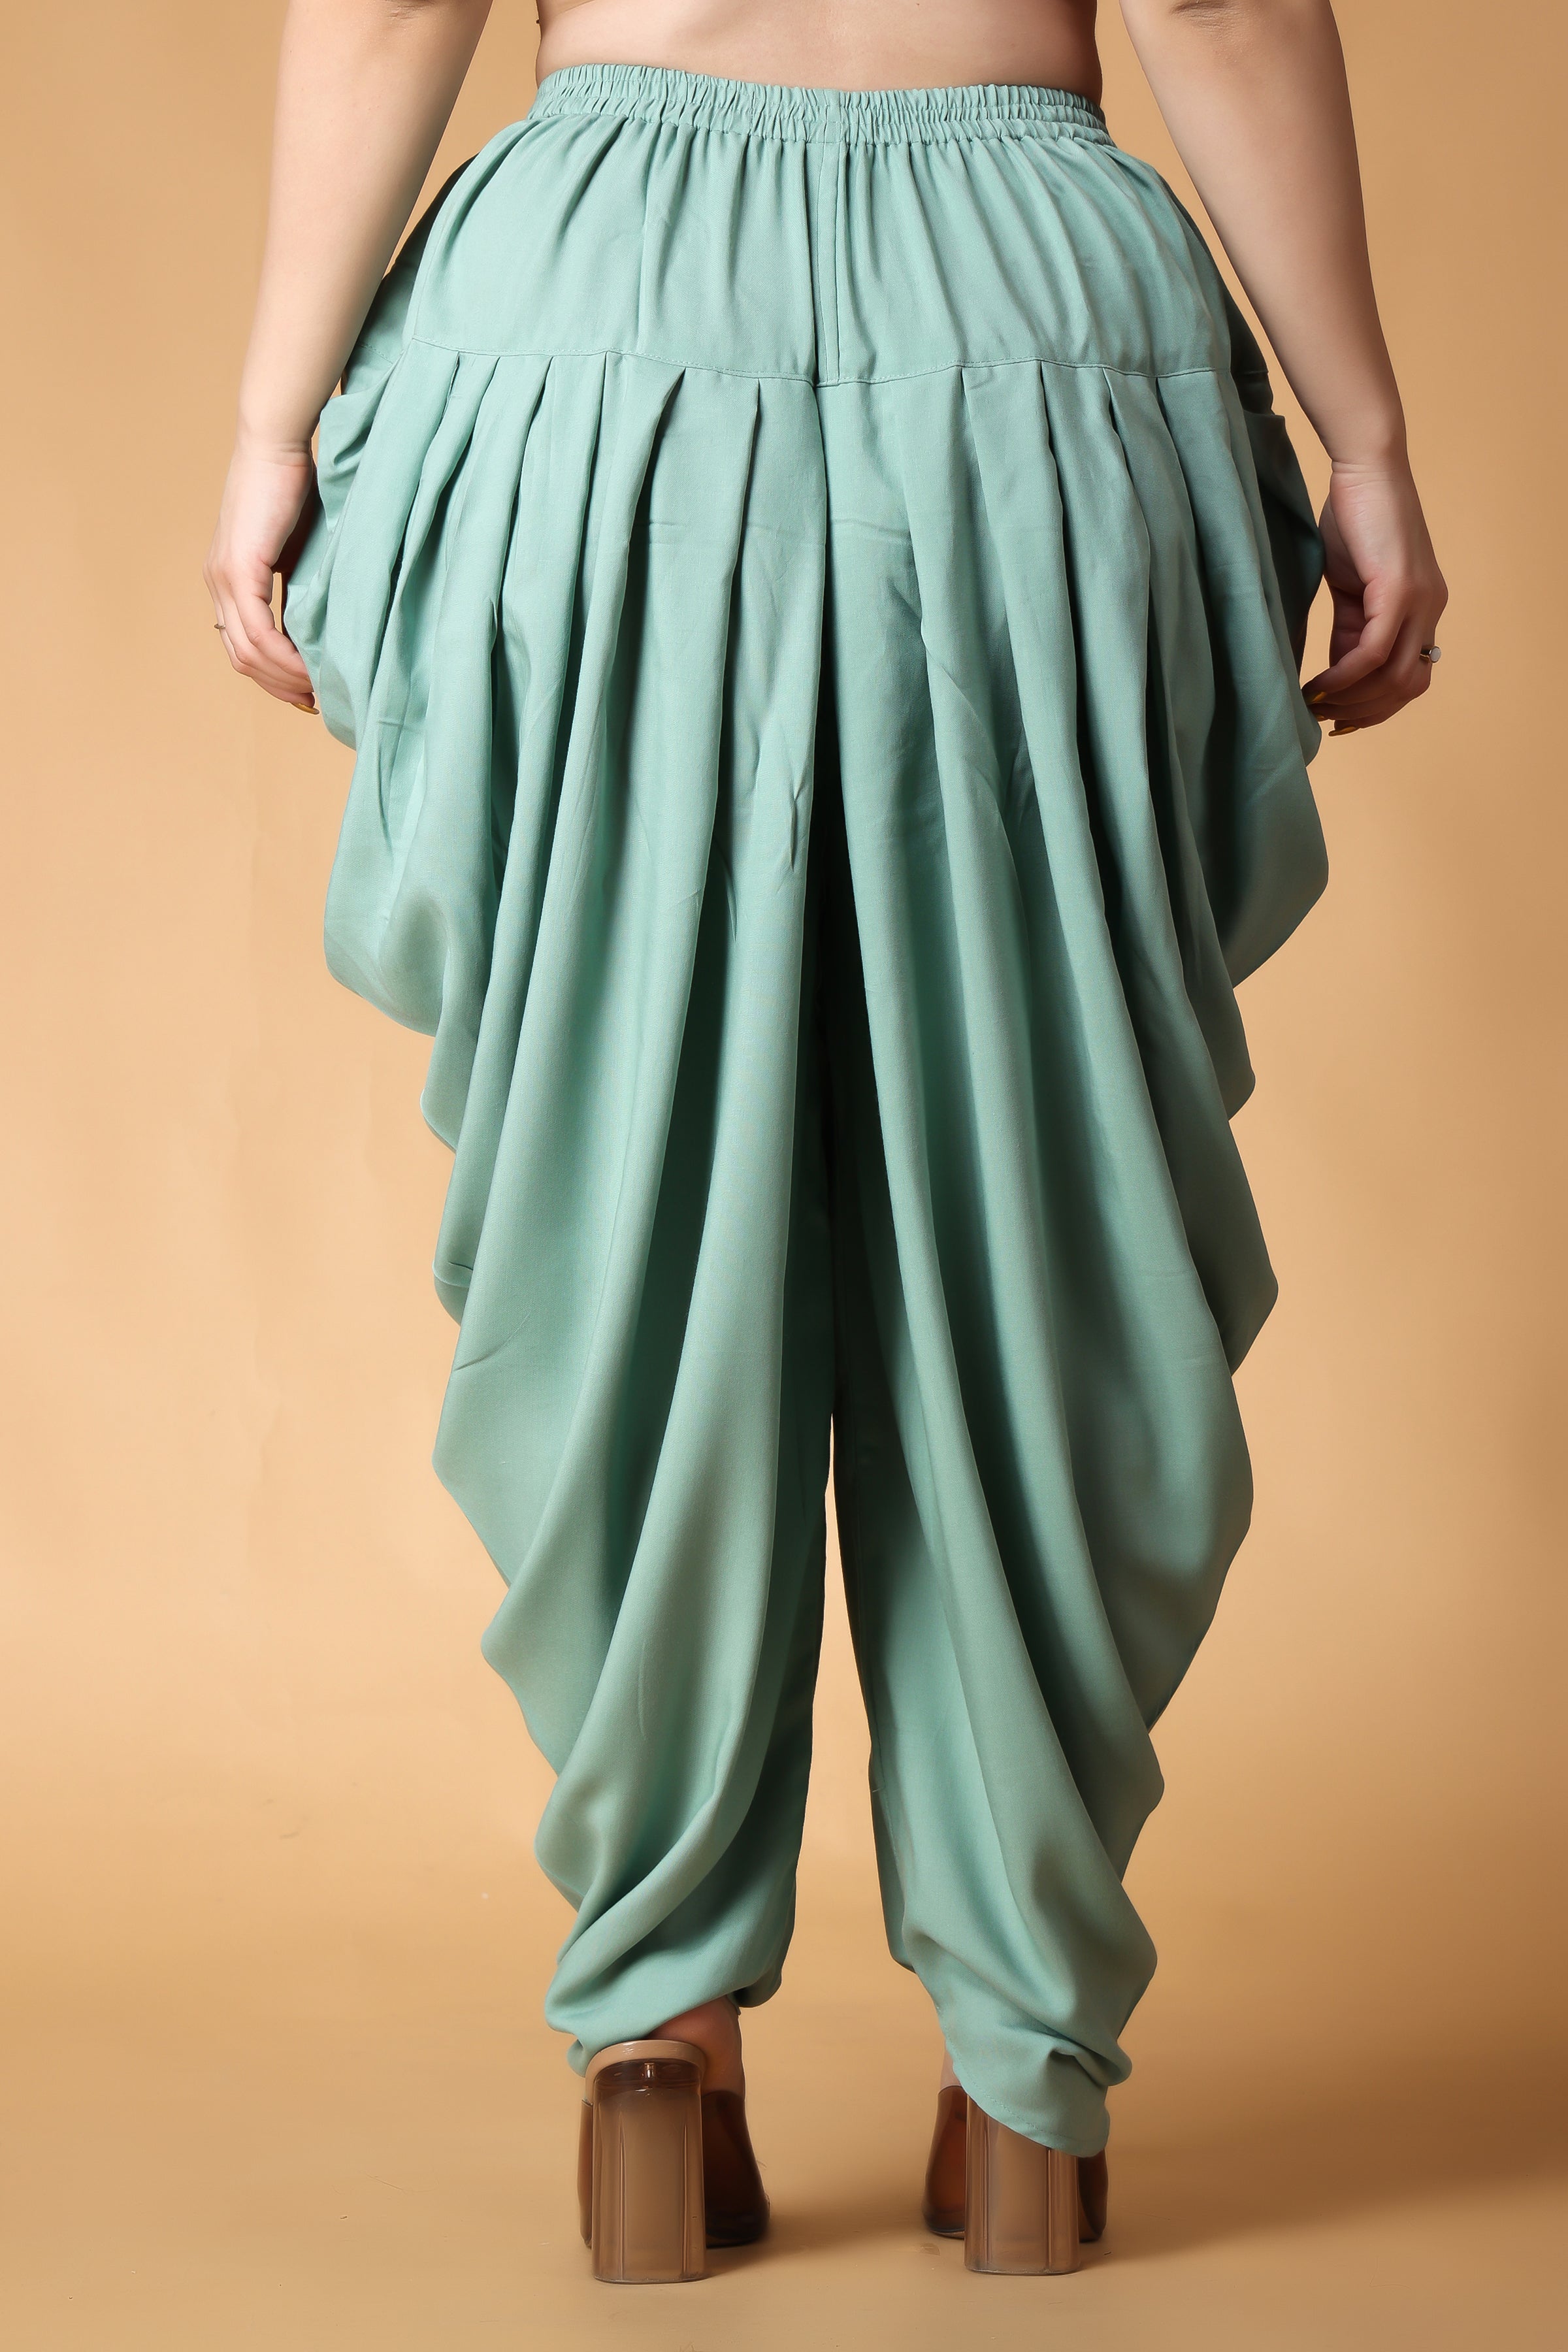 Rayon Print Beige And Blue Stylish Women Dhoti Pants